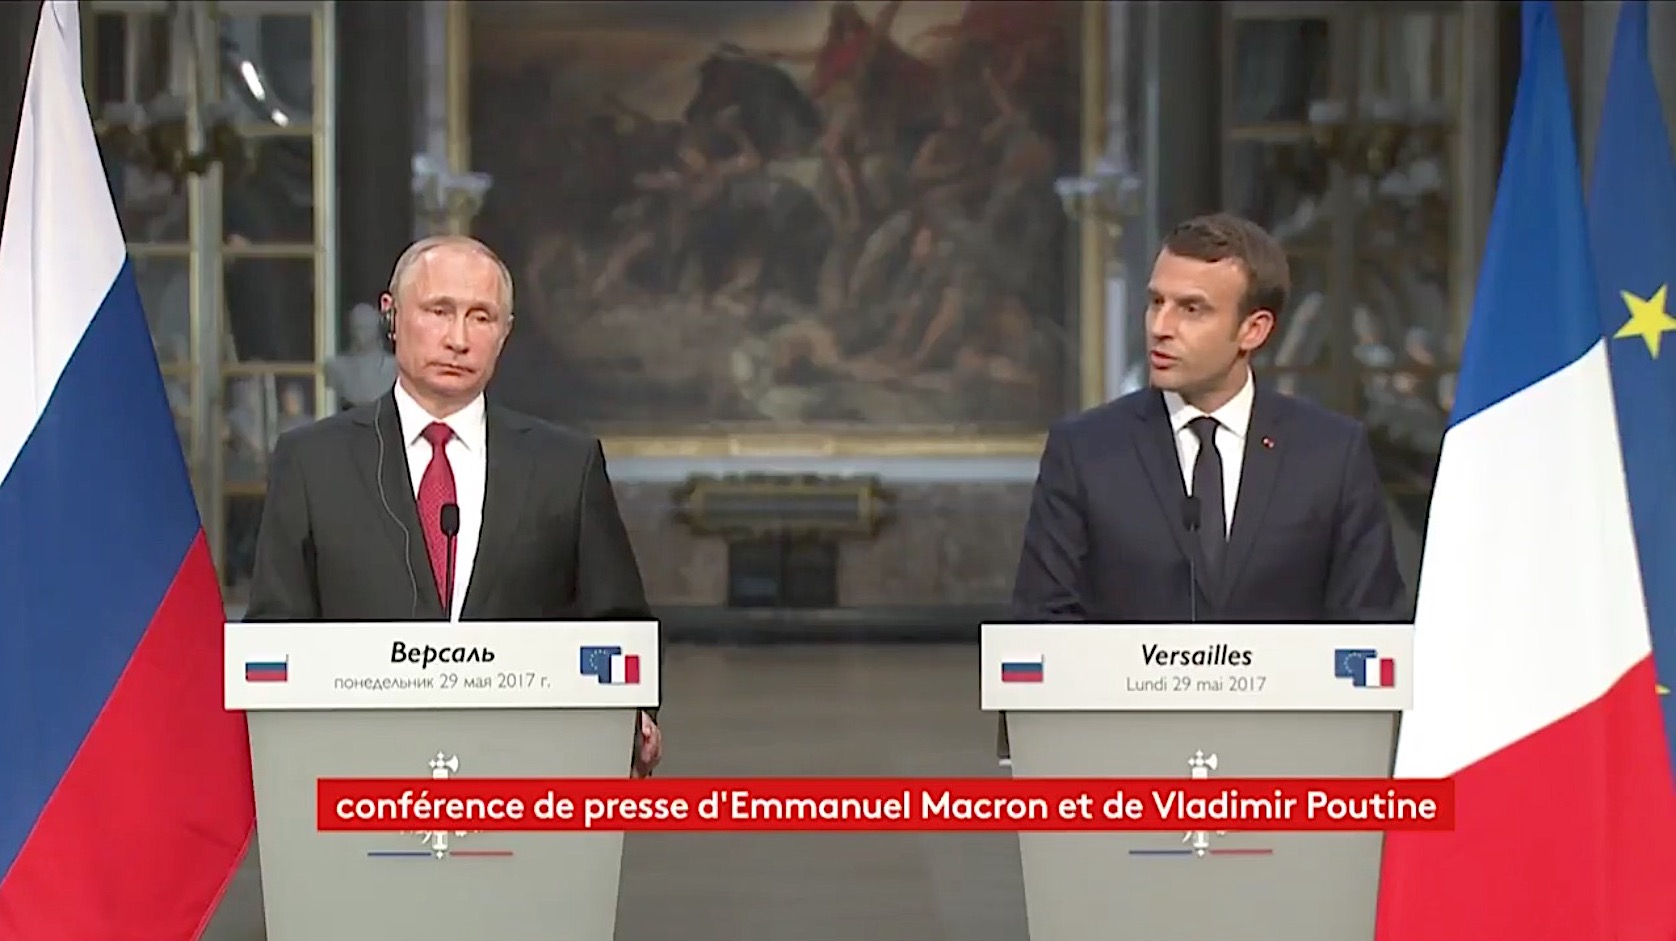 France Macron calls Russian media &quot;propaganda&quot;